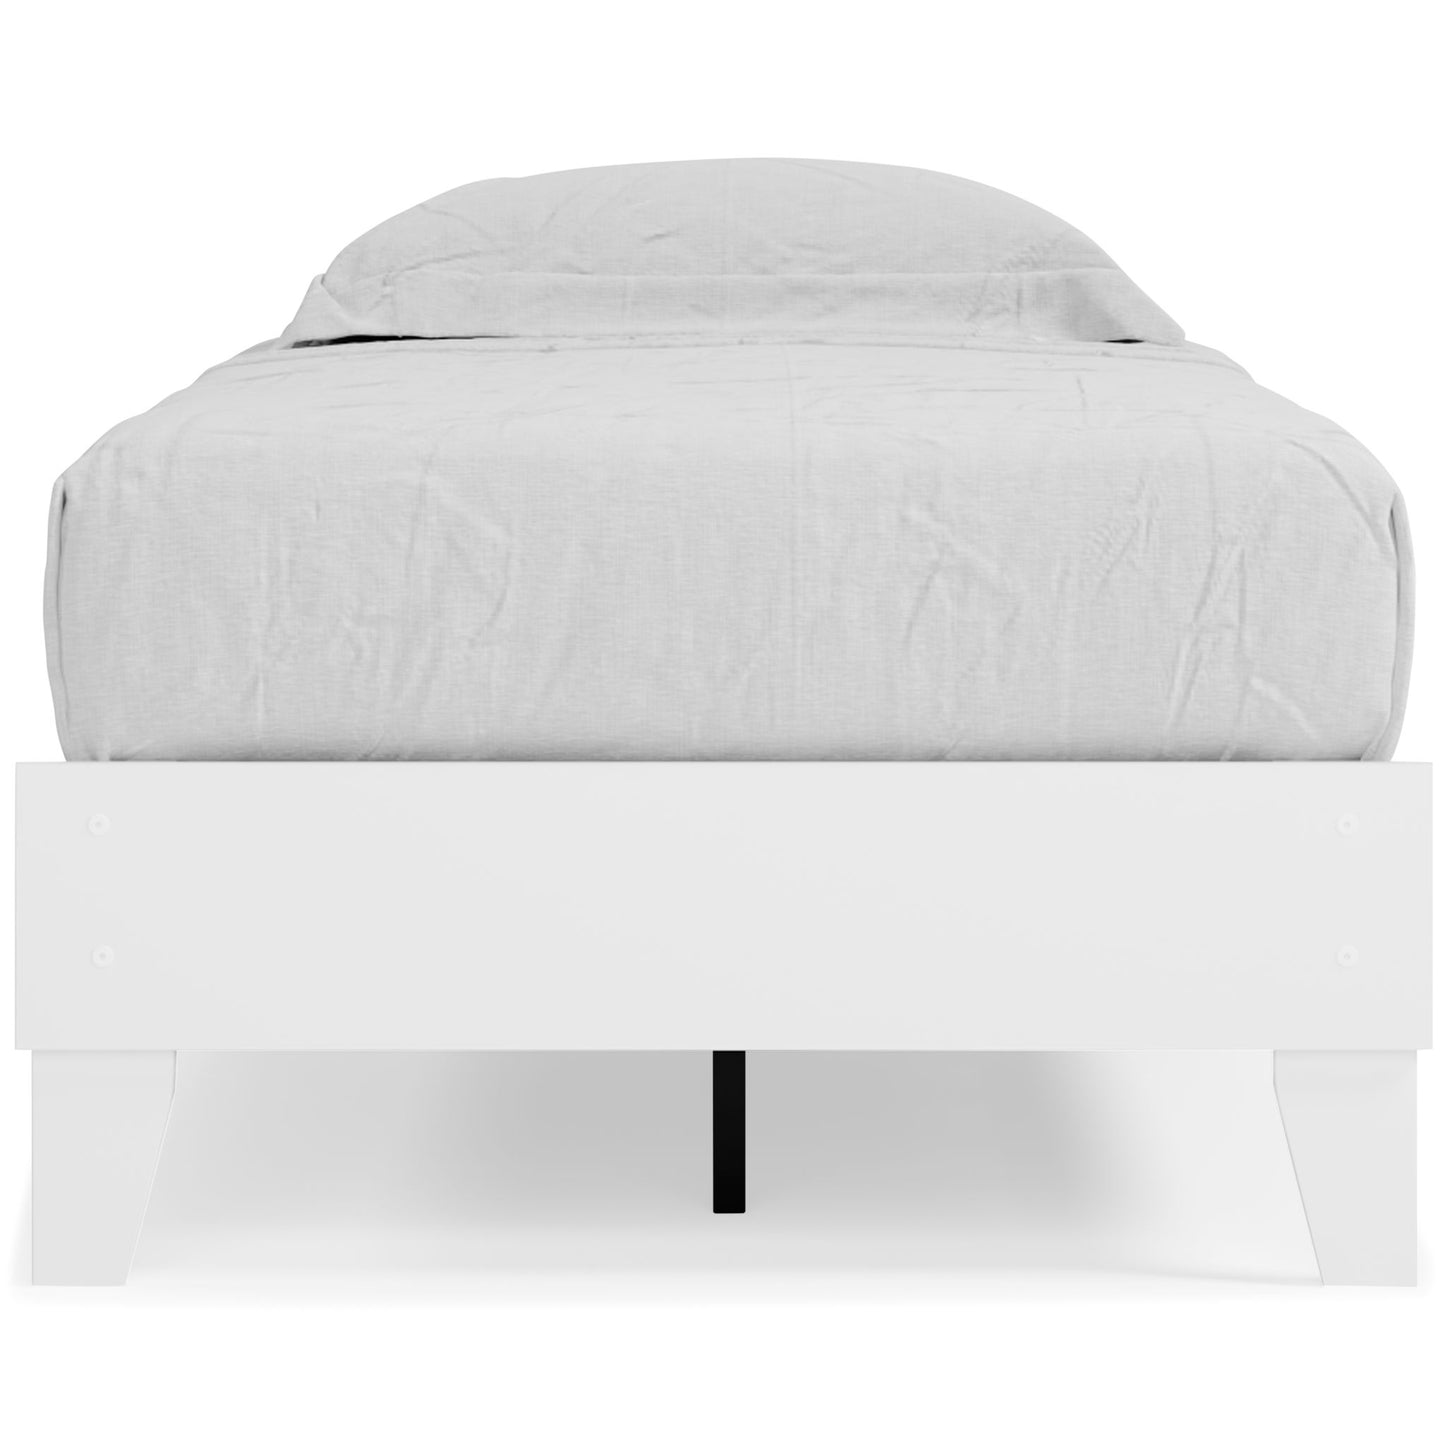 Piperton - White - Full Platform Bed